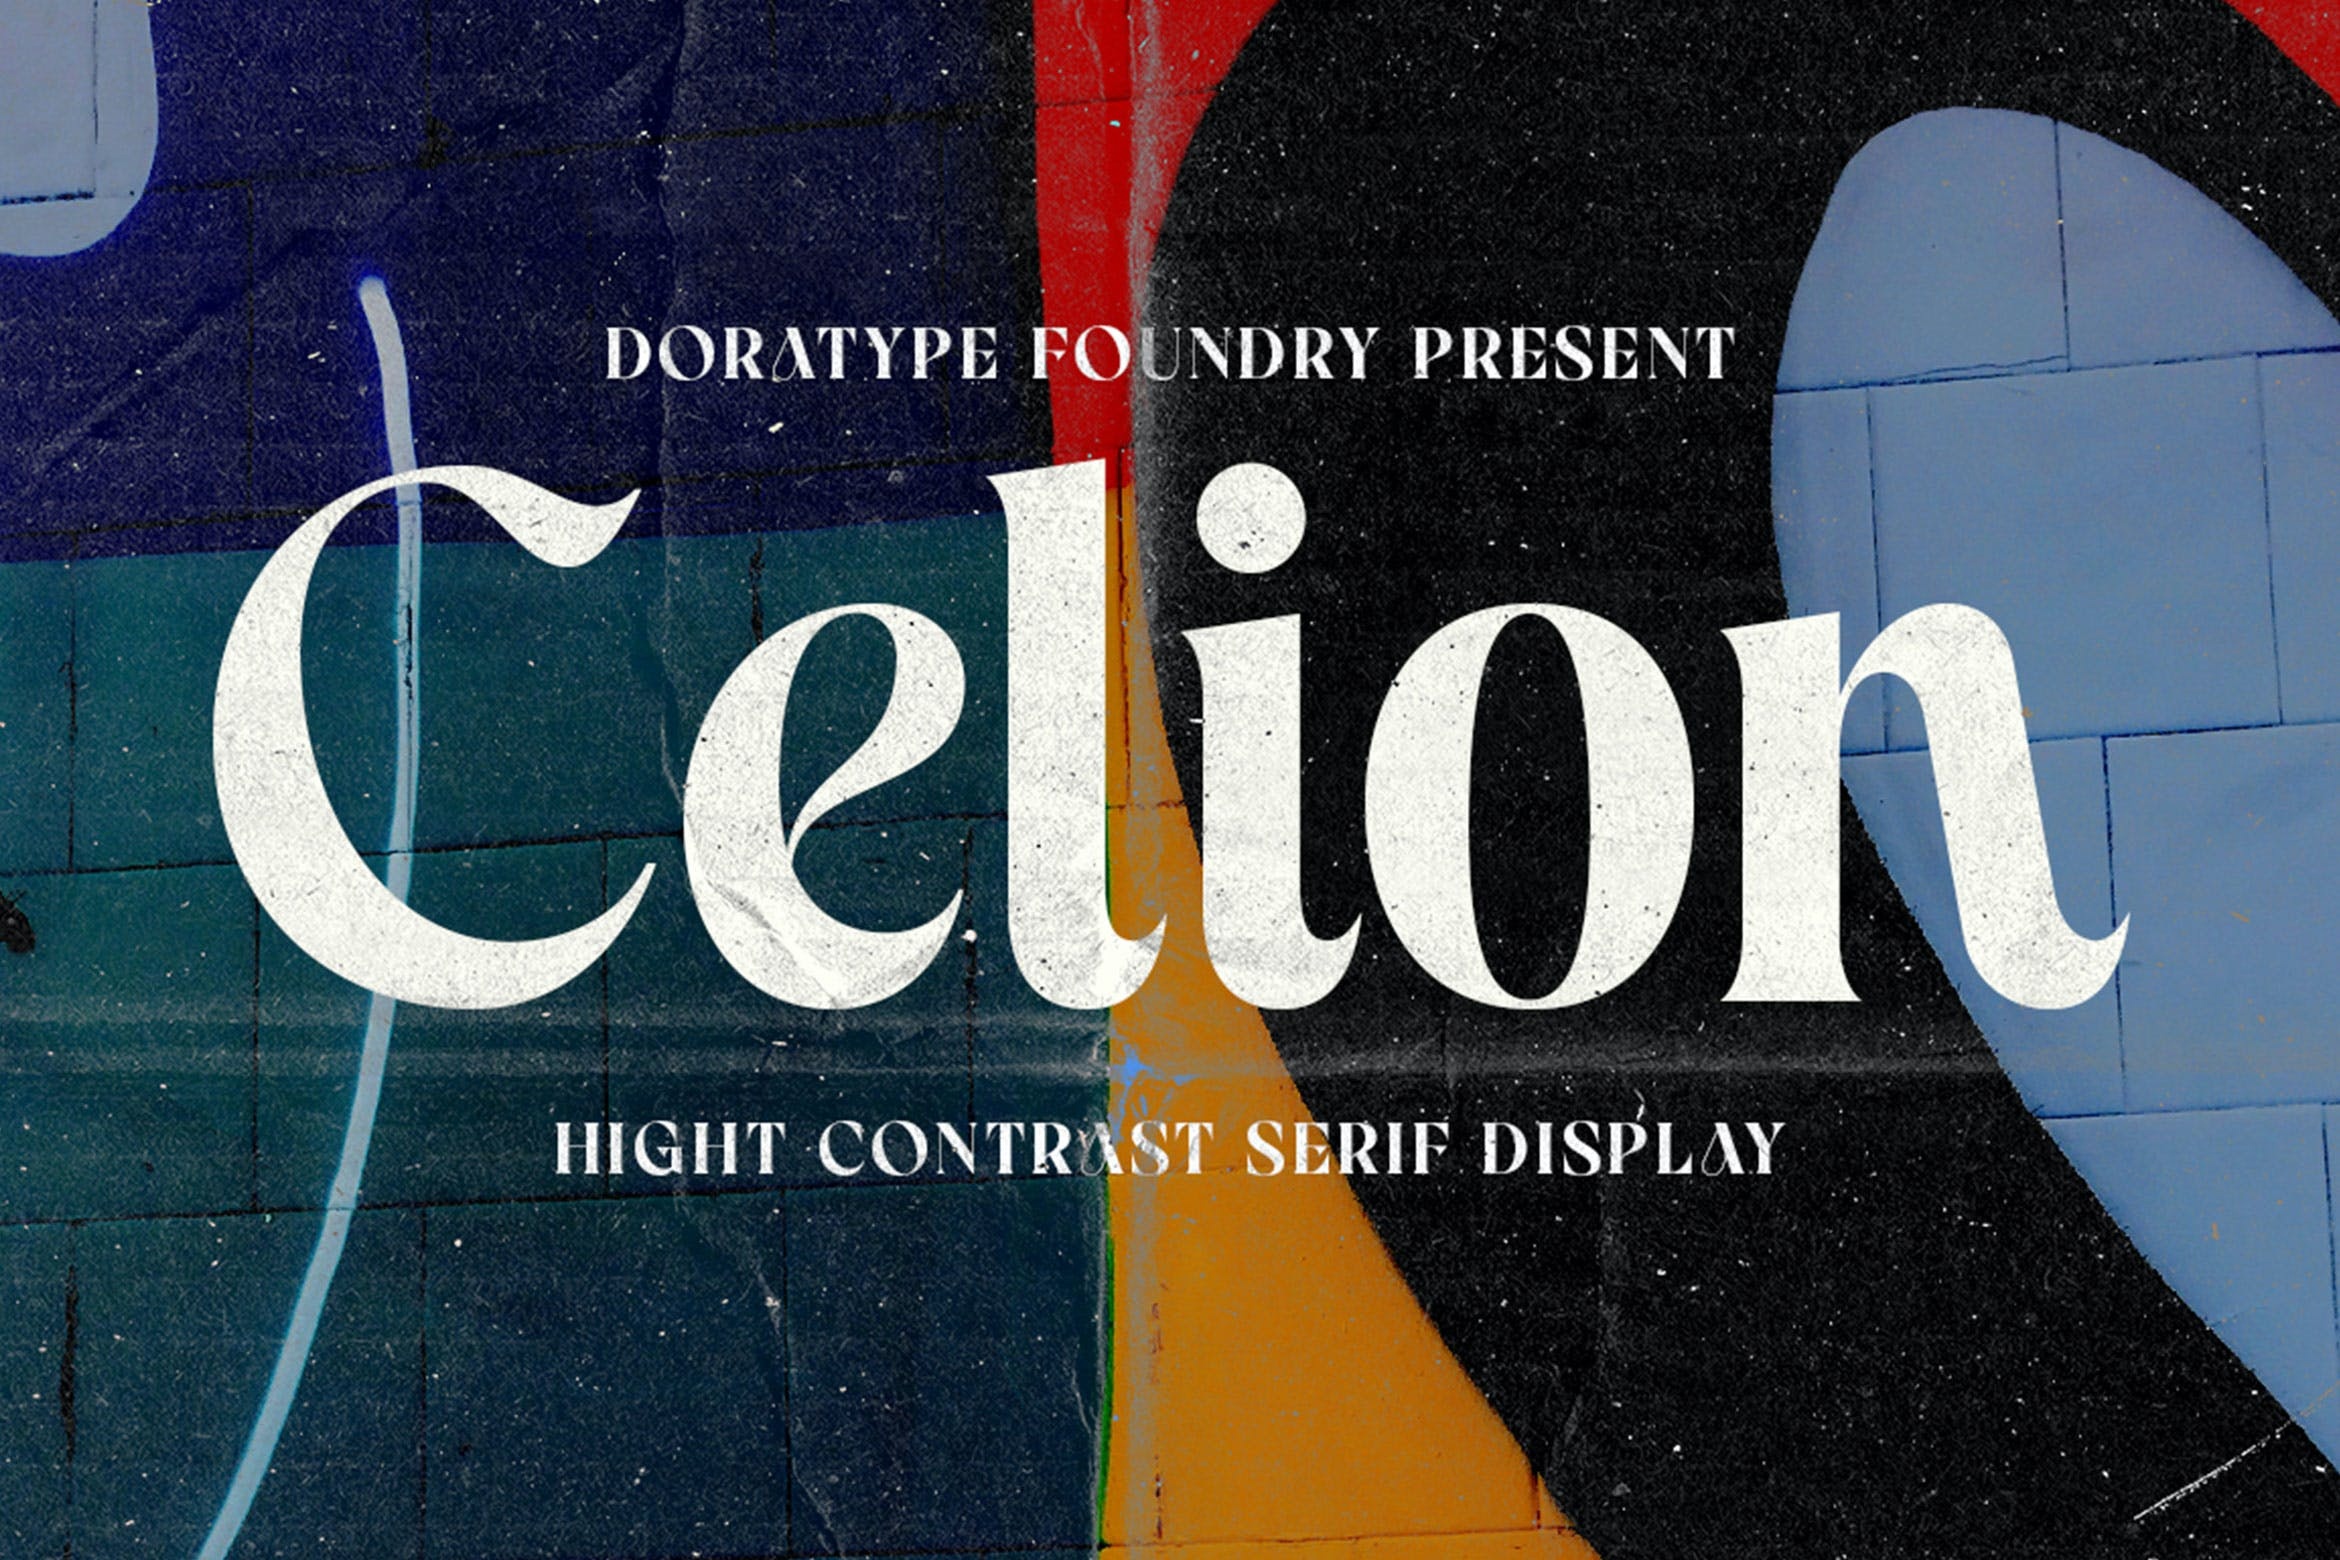 Celion Font